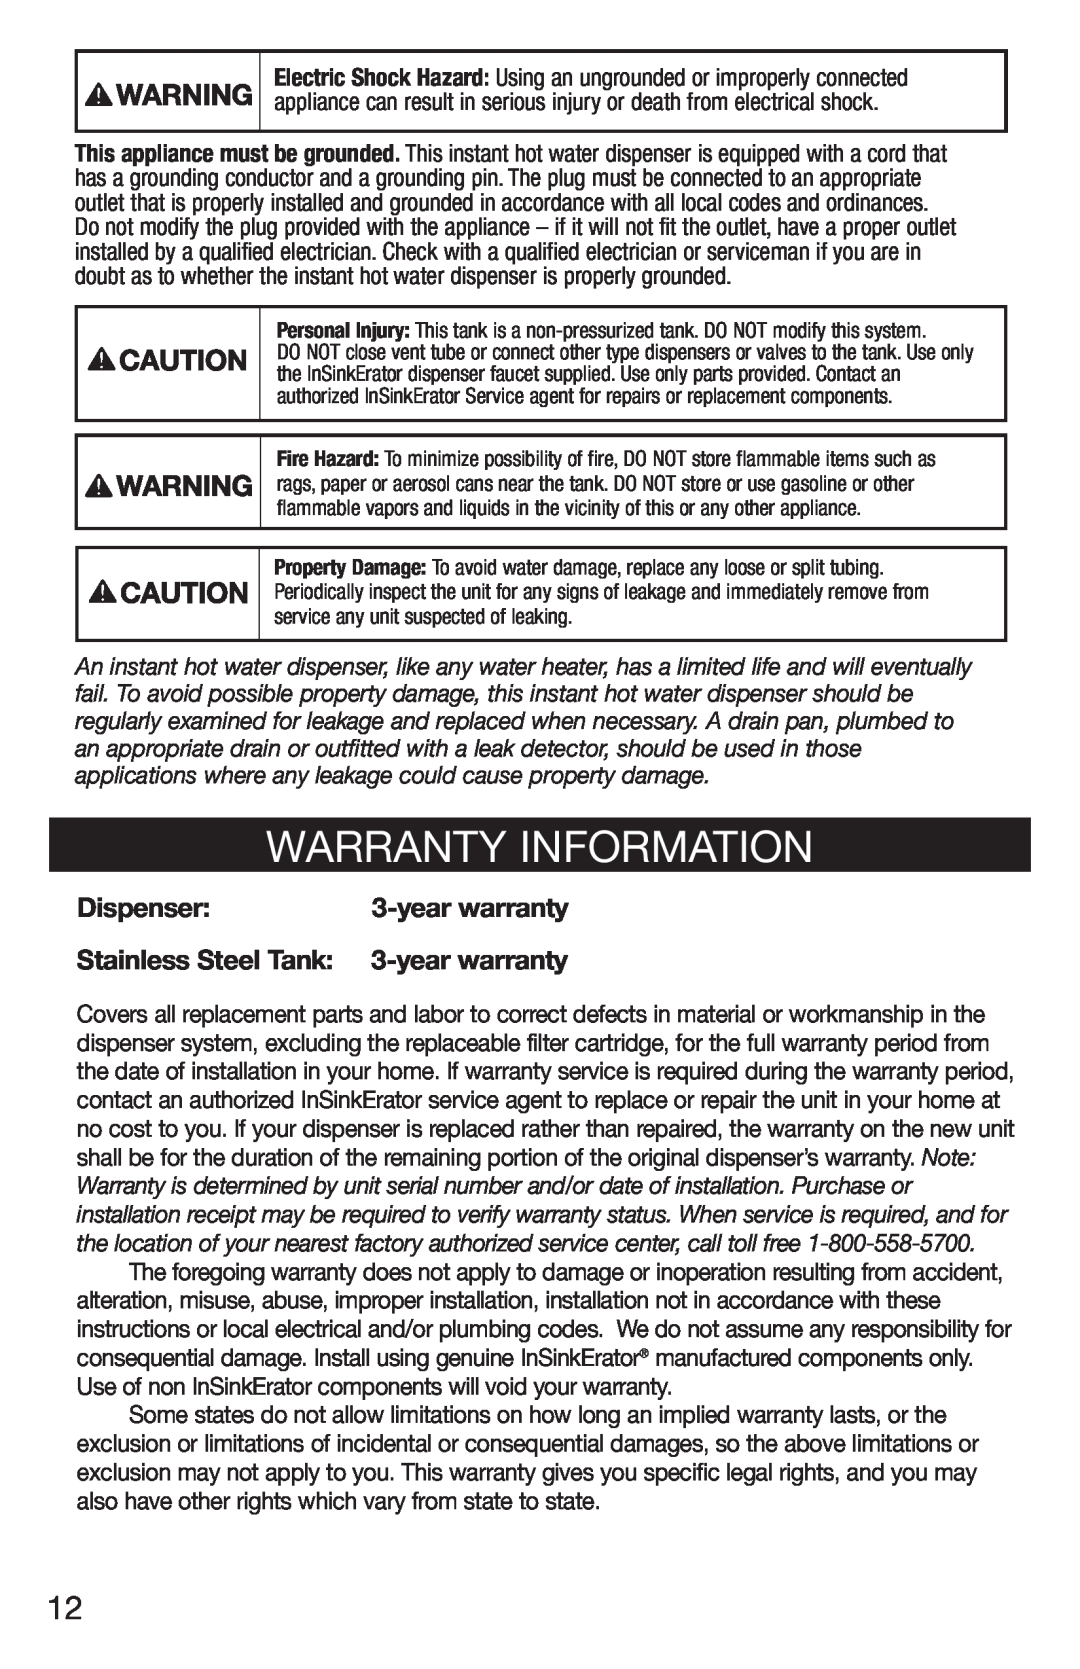 InSinkErator HC3/GN3, H770 owner manual Warranty Information, Dispenser, Stainless Steel Tank 3-year warranty 